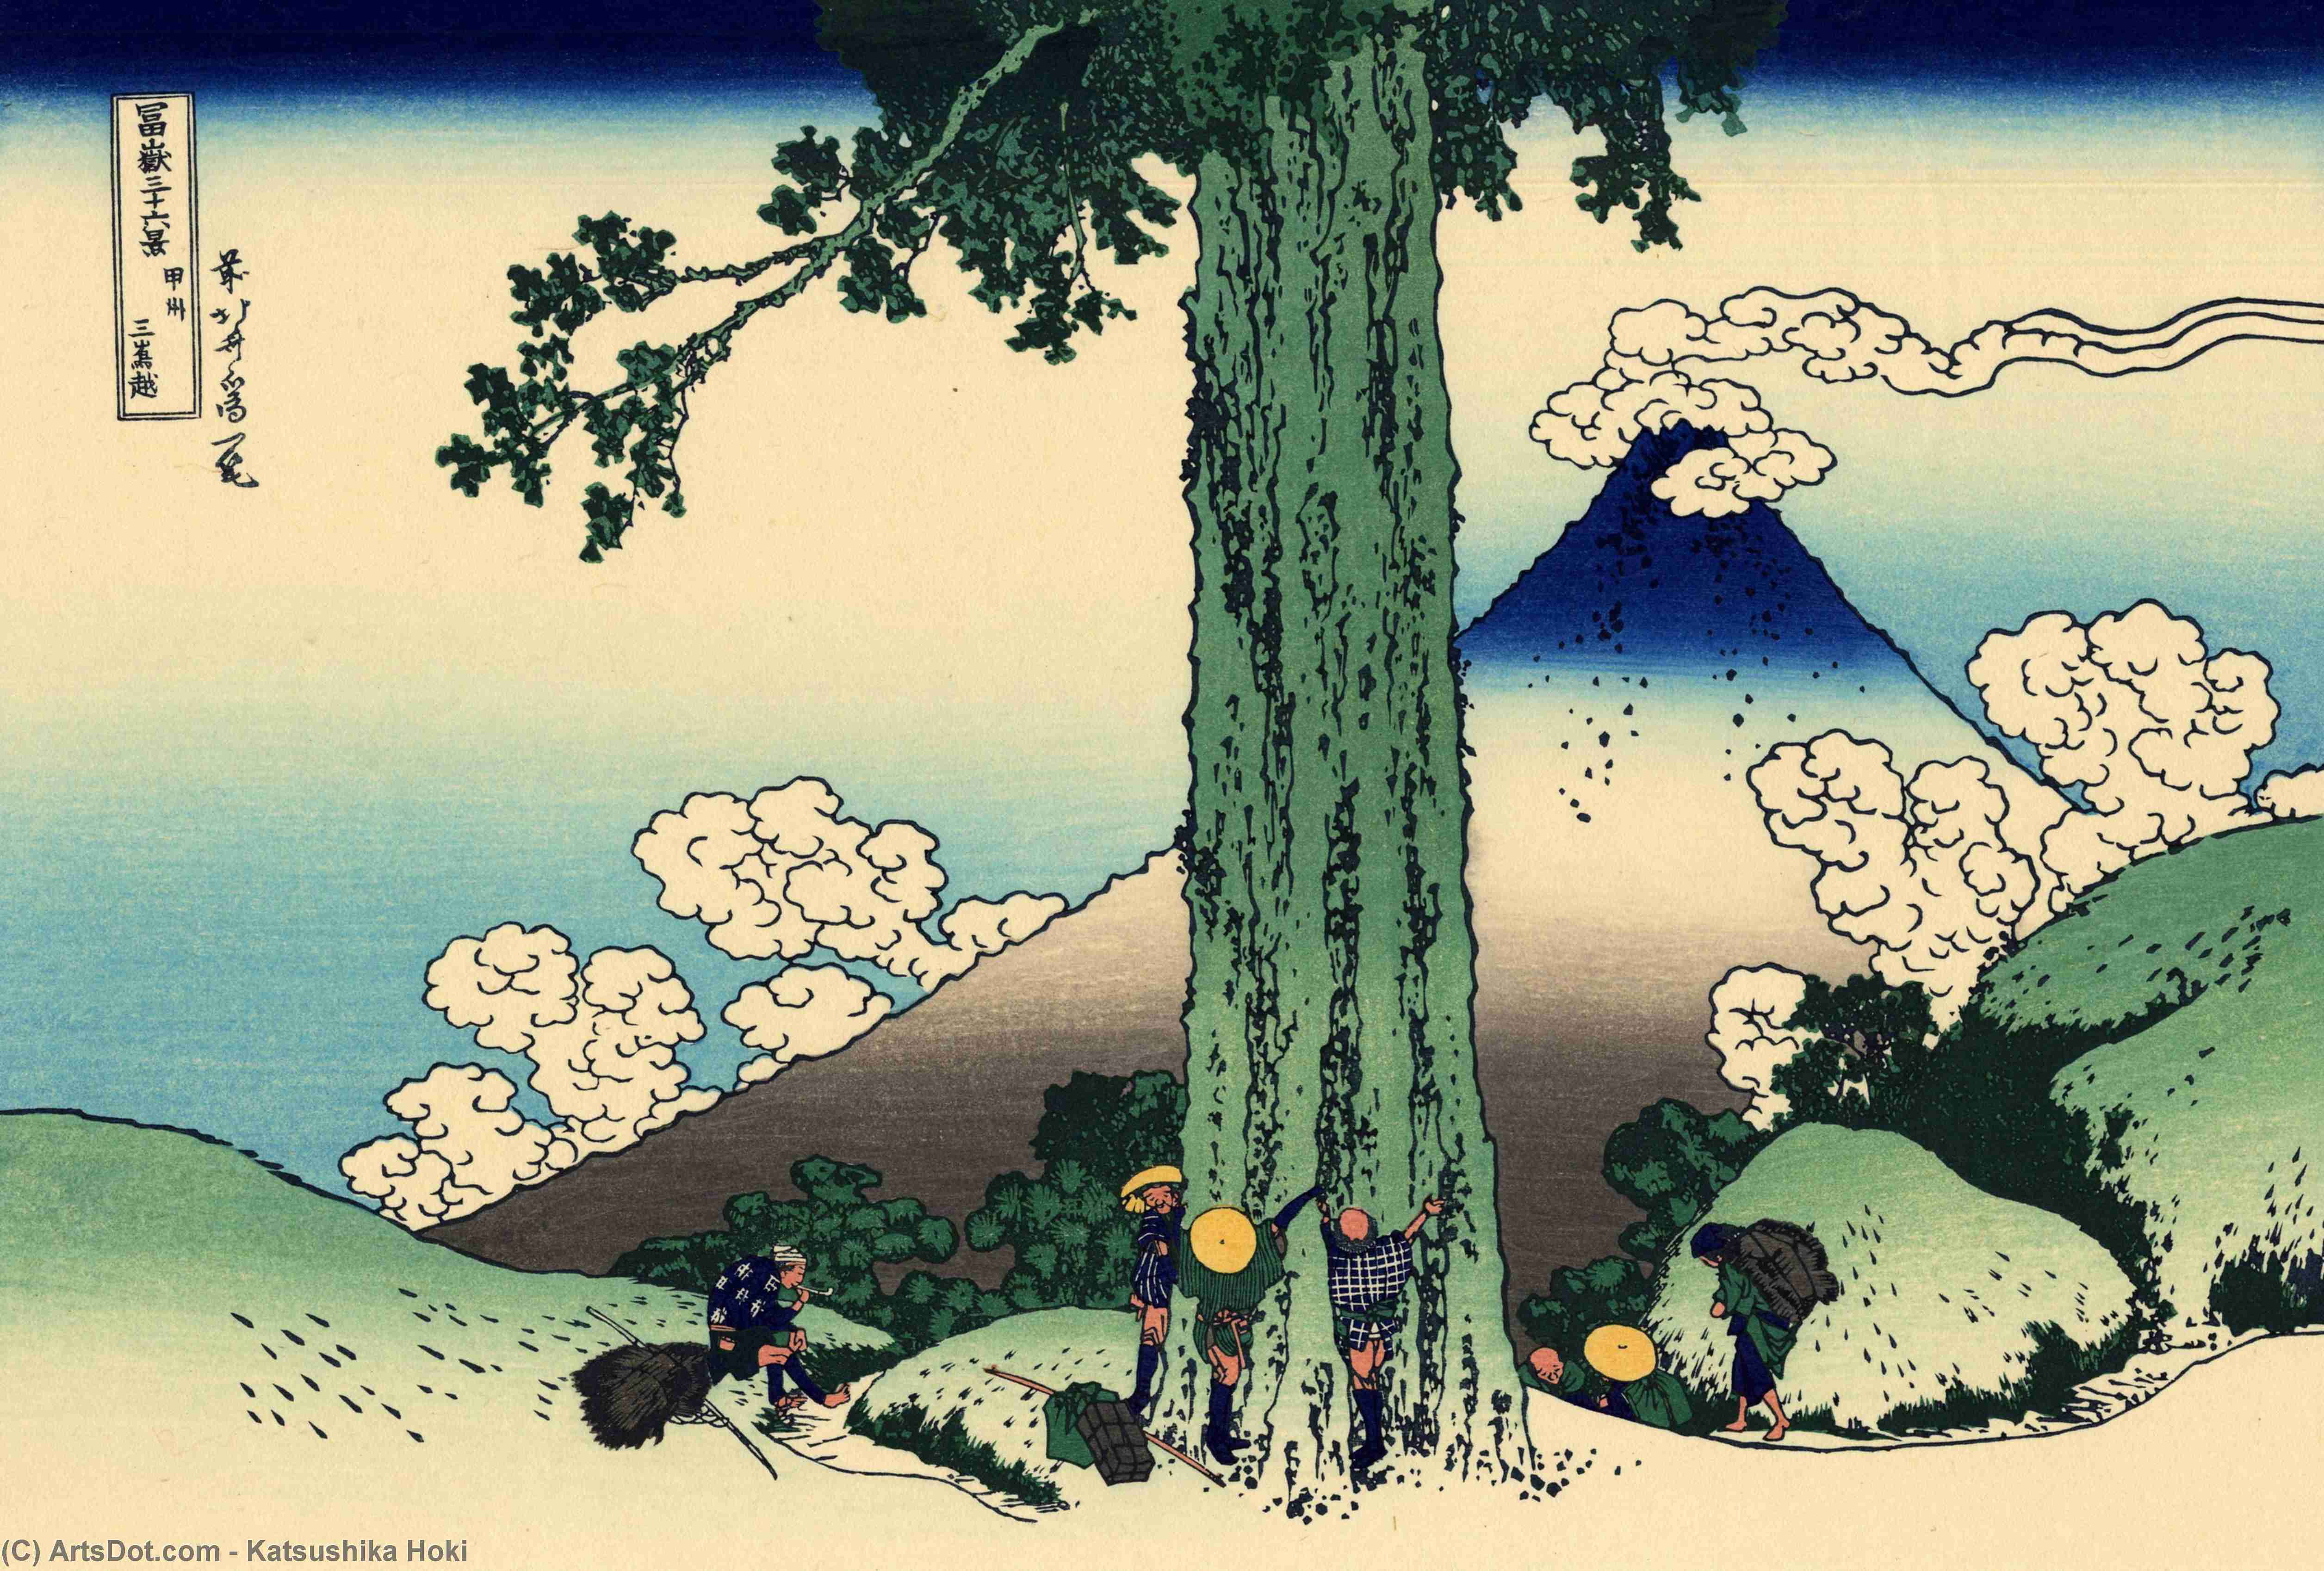 Wikioo.org - Bách khoa toàn thư về mỹ thuật - Vẽ tranh, Tác phẩm nghệ thuật Katsushika Hokusai - Mishima pass in Kai province